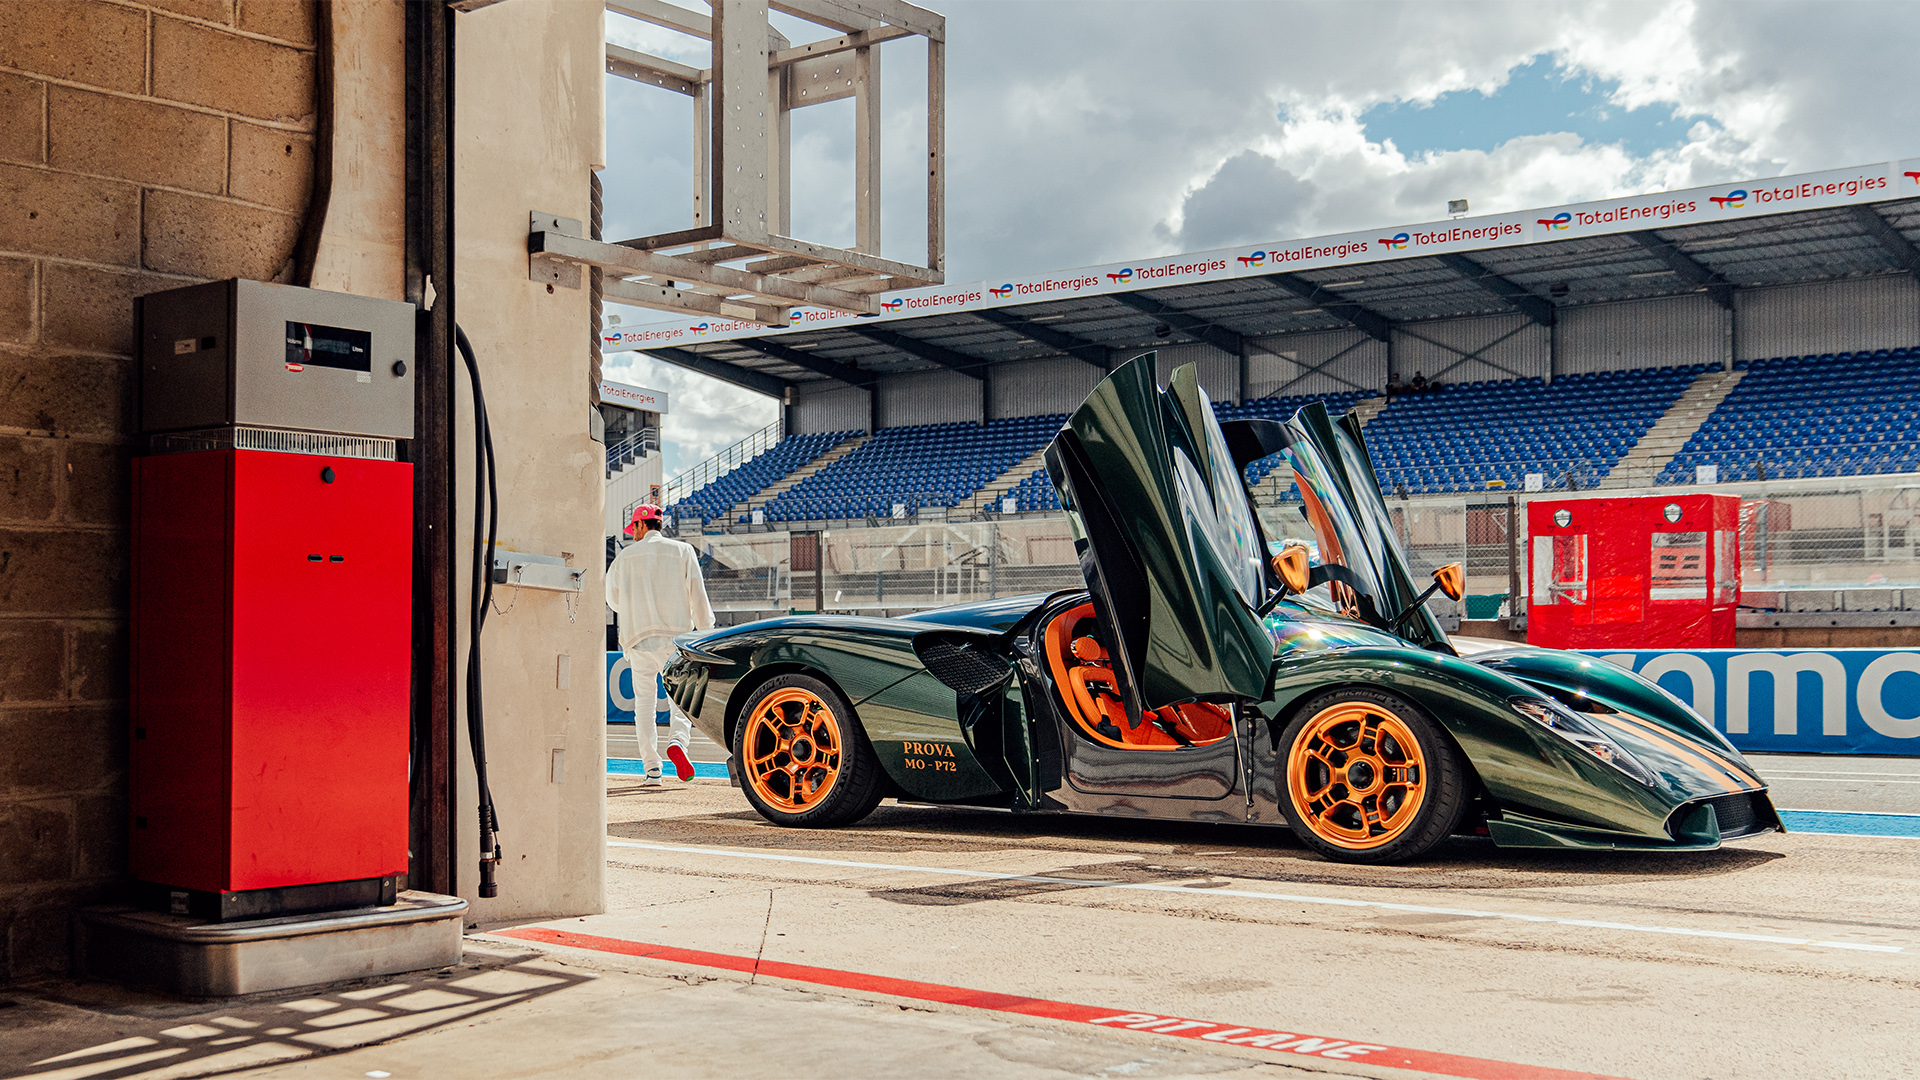 P72 ai box di Le Mans, vicino alla pompa del carburante.  Forse un segno del continuo utilizzo dei motori a combustione interna come concept globale per il marchio De Tomaso